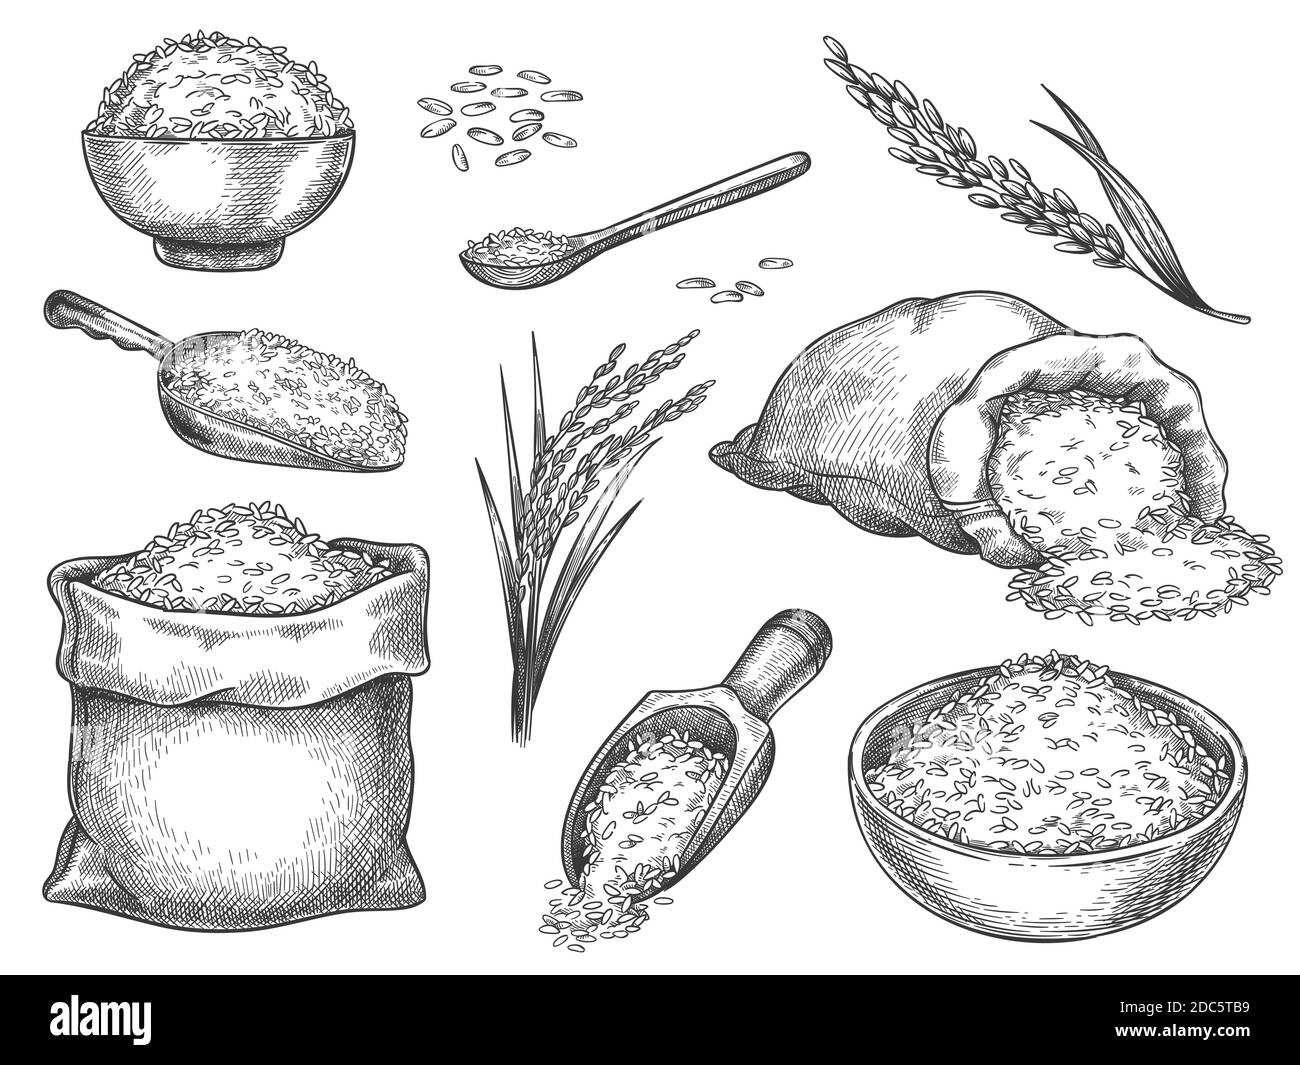 Skizzieren Sie Reiskörner. Vintage Samen Haufen und Bauernhof Ohren. Ganze Basmati-Körnung in Beutel, Schaufel und Löffel. Schüssel mit Reisbrei. Handgezeichneter Vektorsatz Stock Vektor